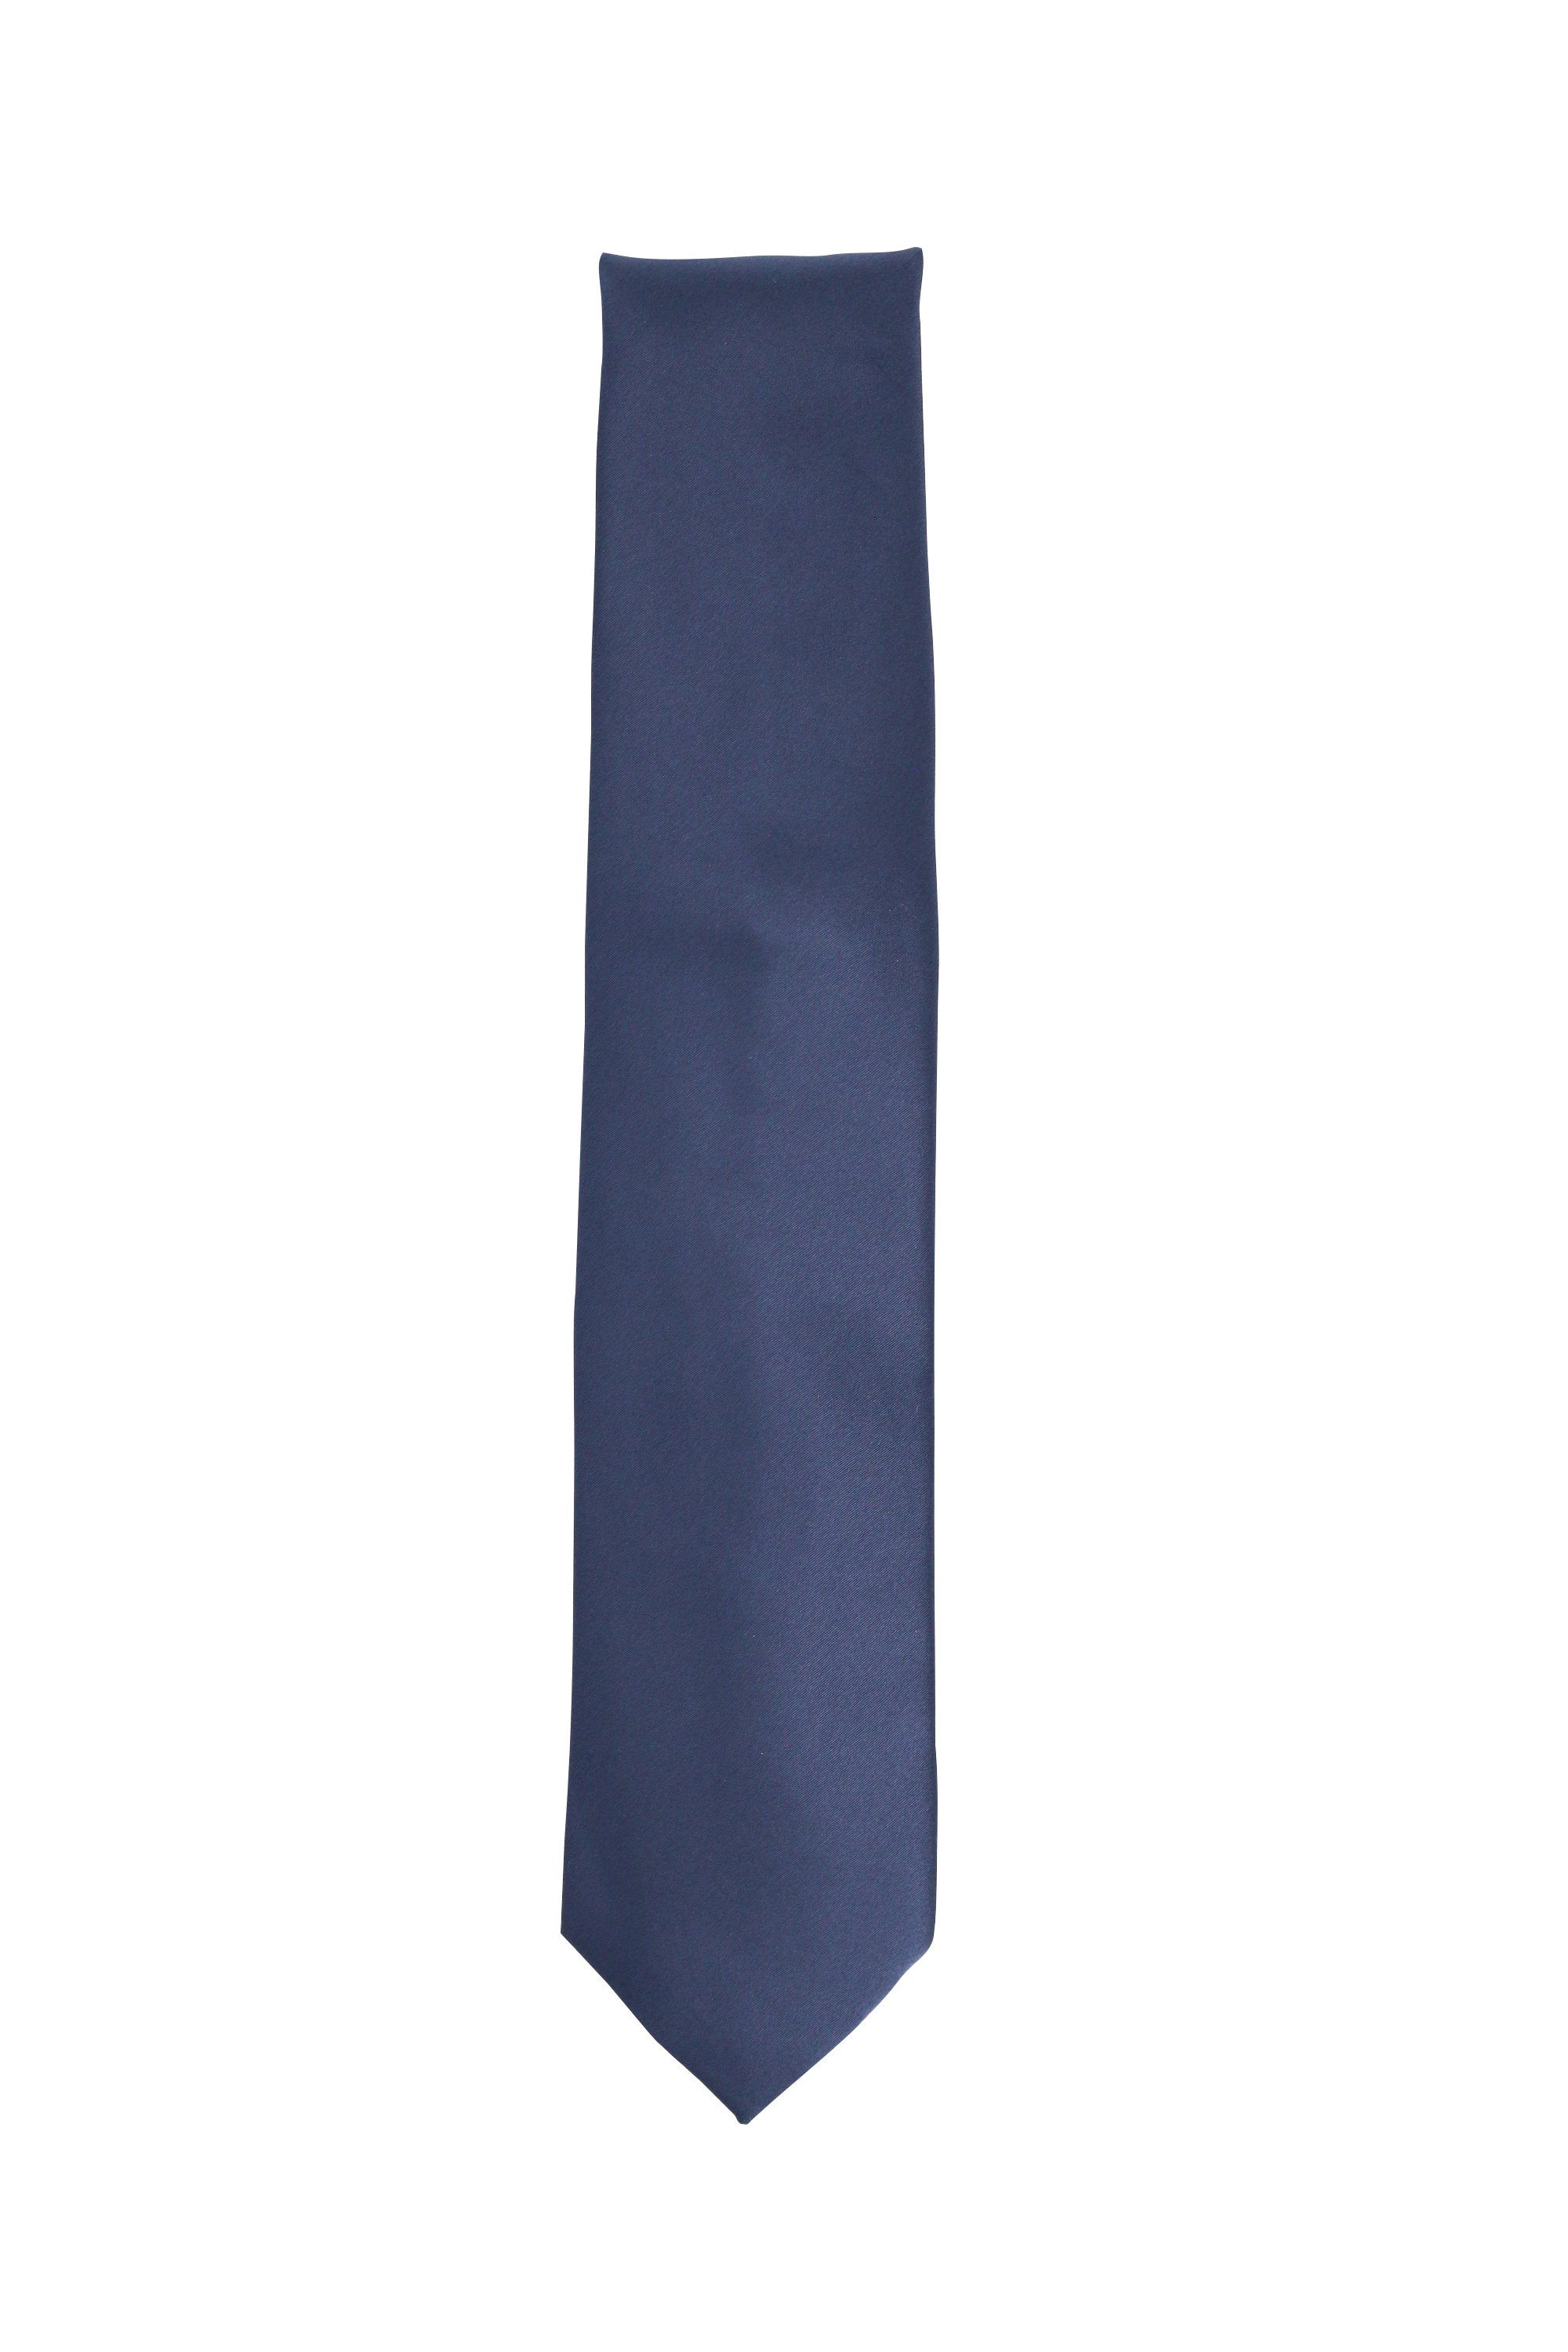 (8cm), Krawatte Einfarbig Fabio (ohne Regency - Box, verschiedene Farini Blautöne in Uni Blaue - Blue Männer Schlips Krawatte Dunkelblau Herren Breit 8cm Unifarben)